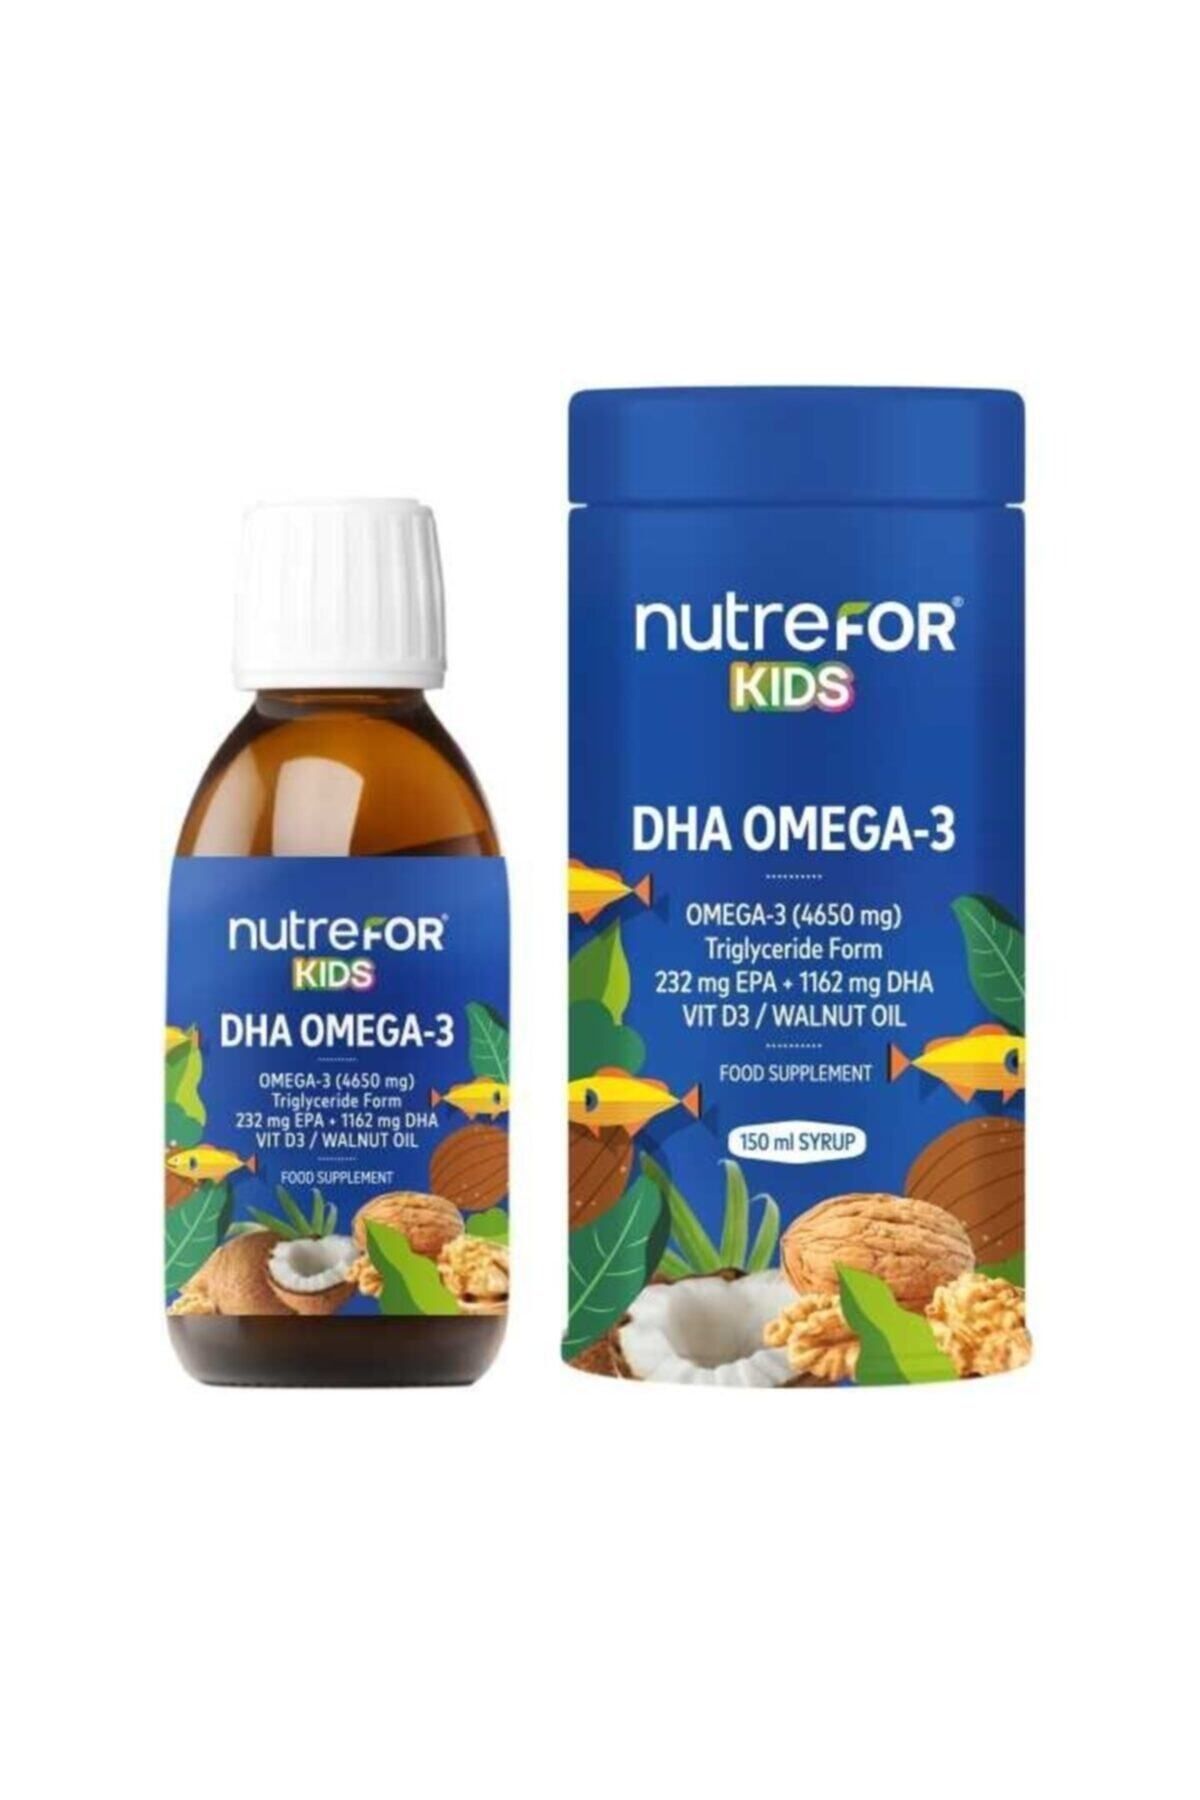 Nutrefor Dha Omega 3 Kids 150 ml